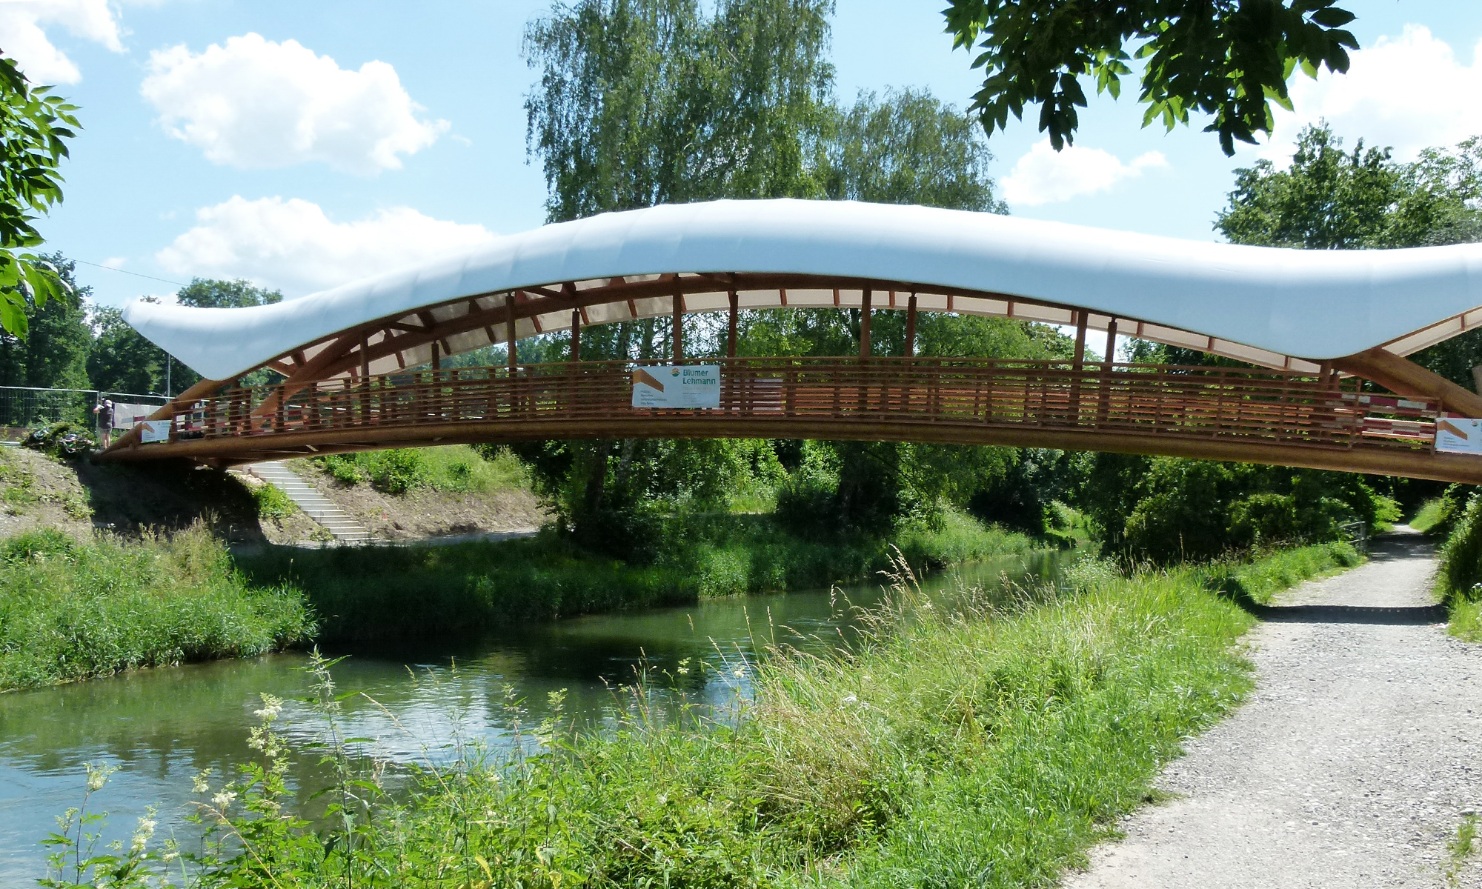 Gesamtansicht der Holzkunstbrücke Aubrugg mit einer weiss-geschwungener Überdachung bei schönem Wetter